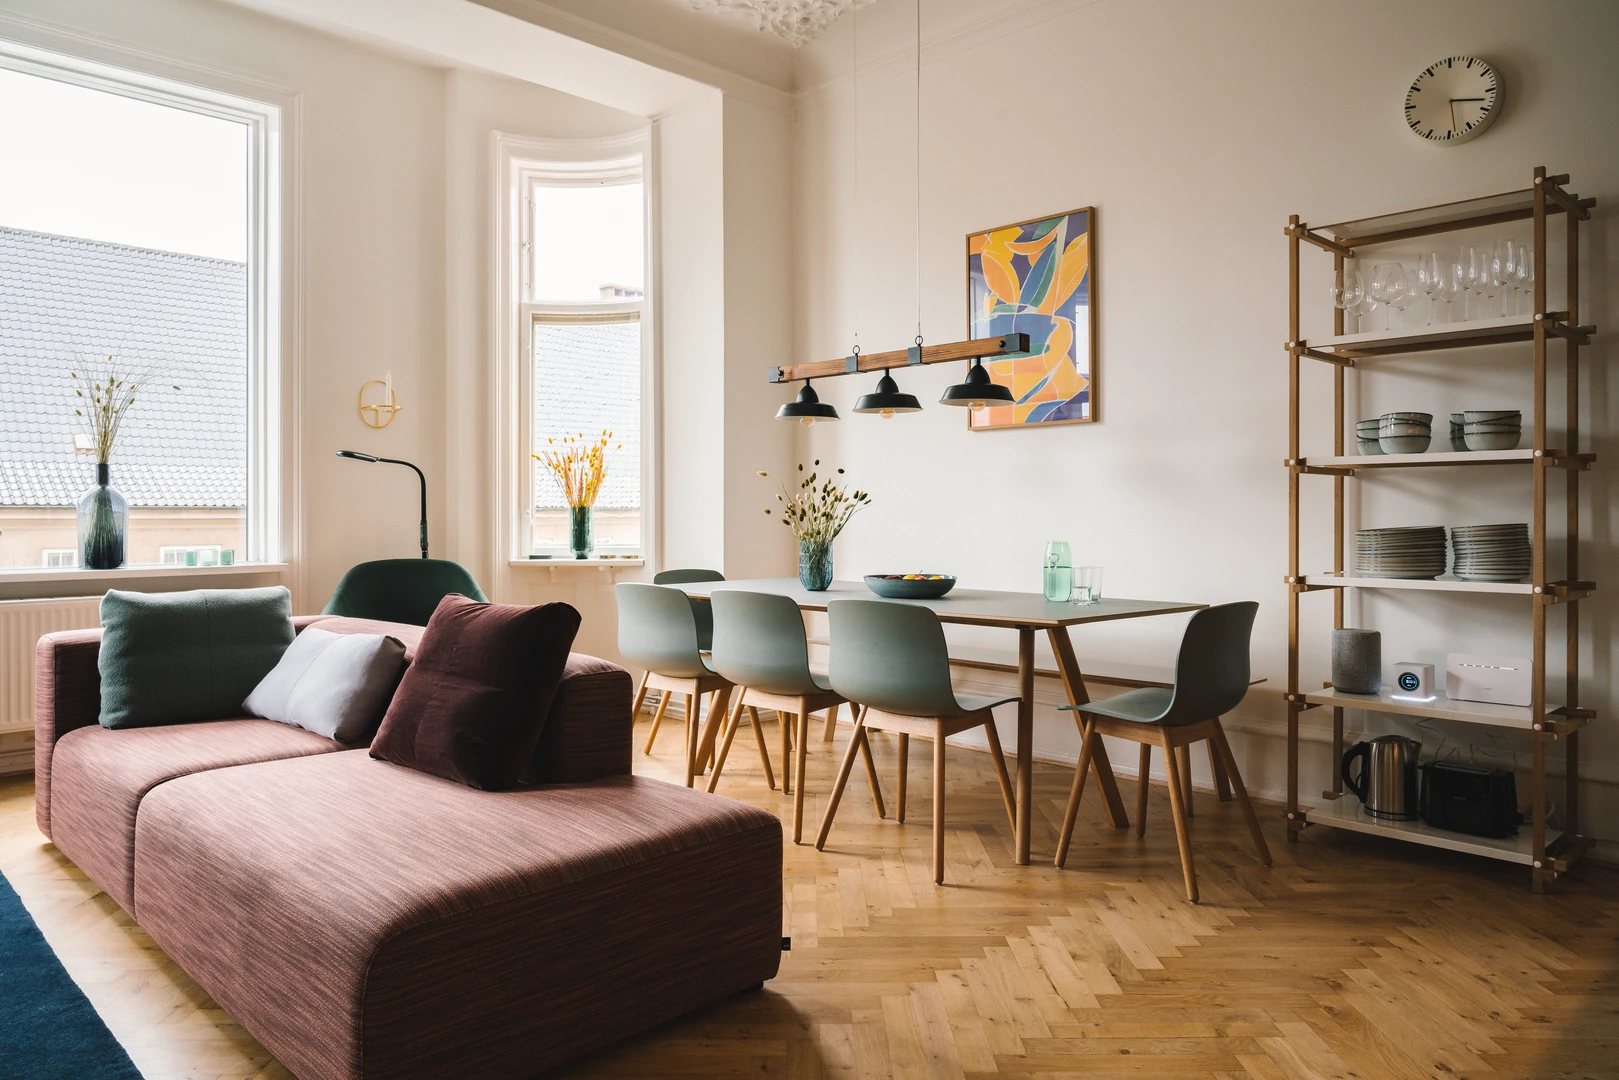 Bright private room in Copenhagen